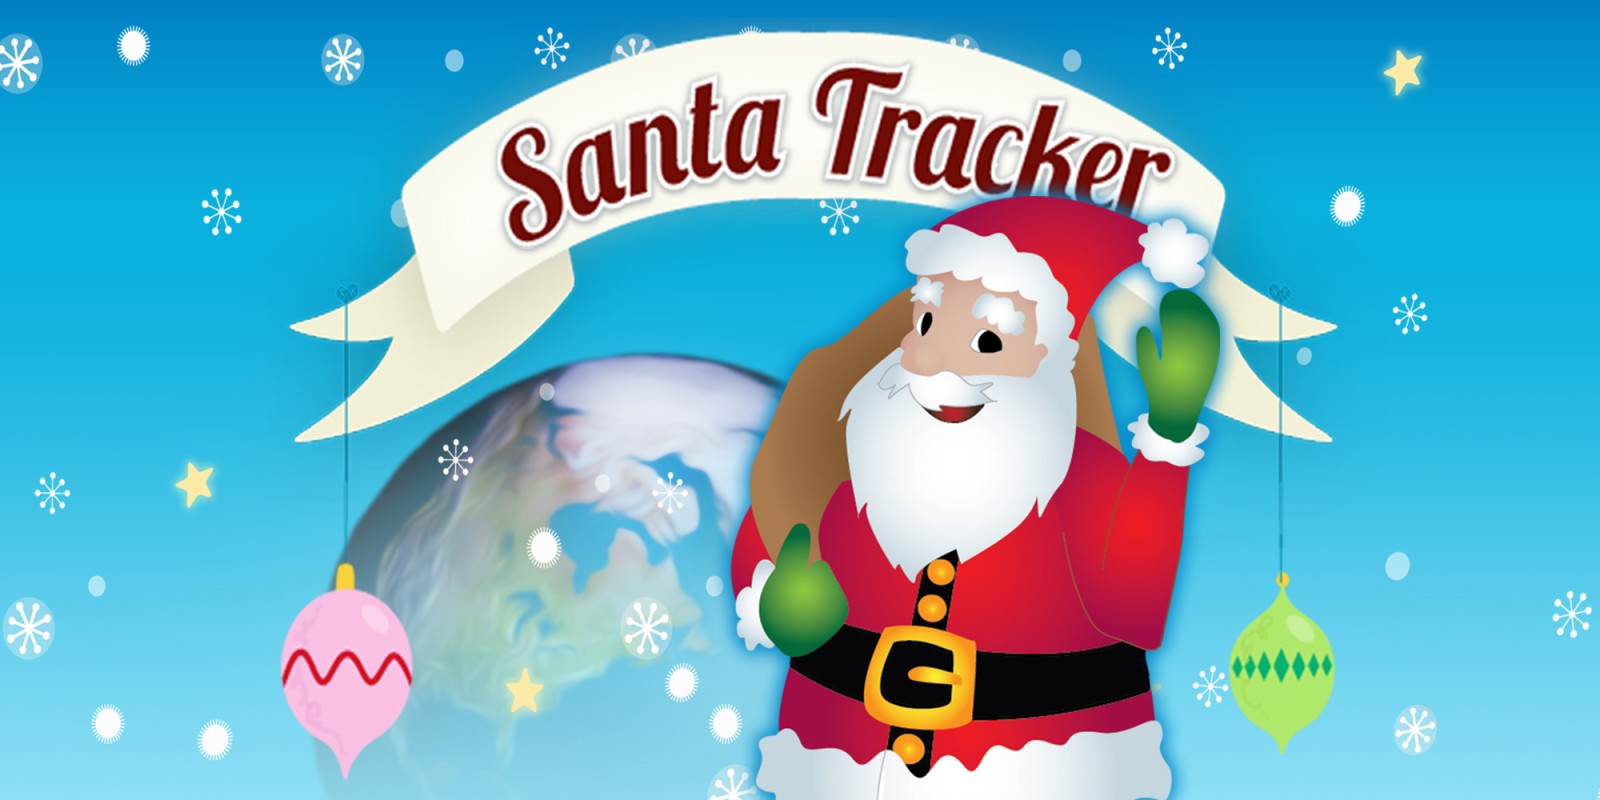 play santa reindeer kicken free online games